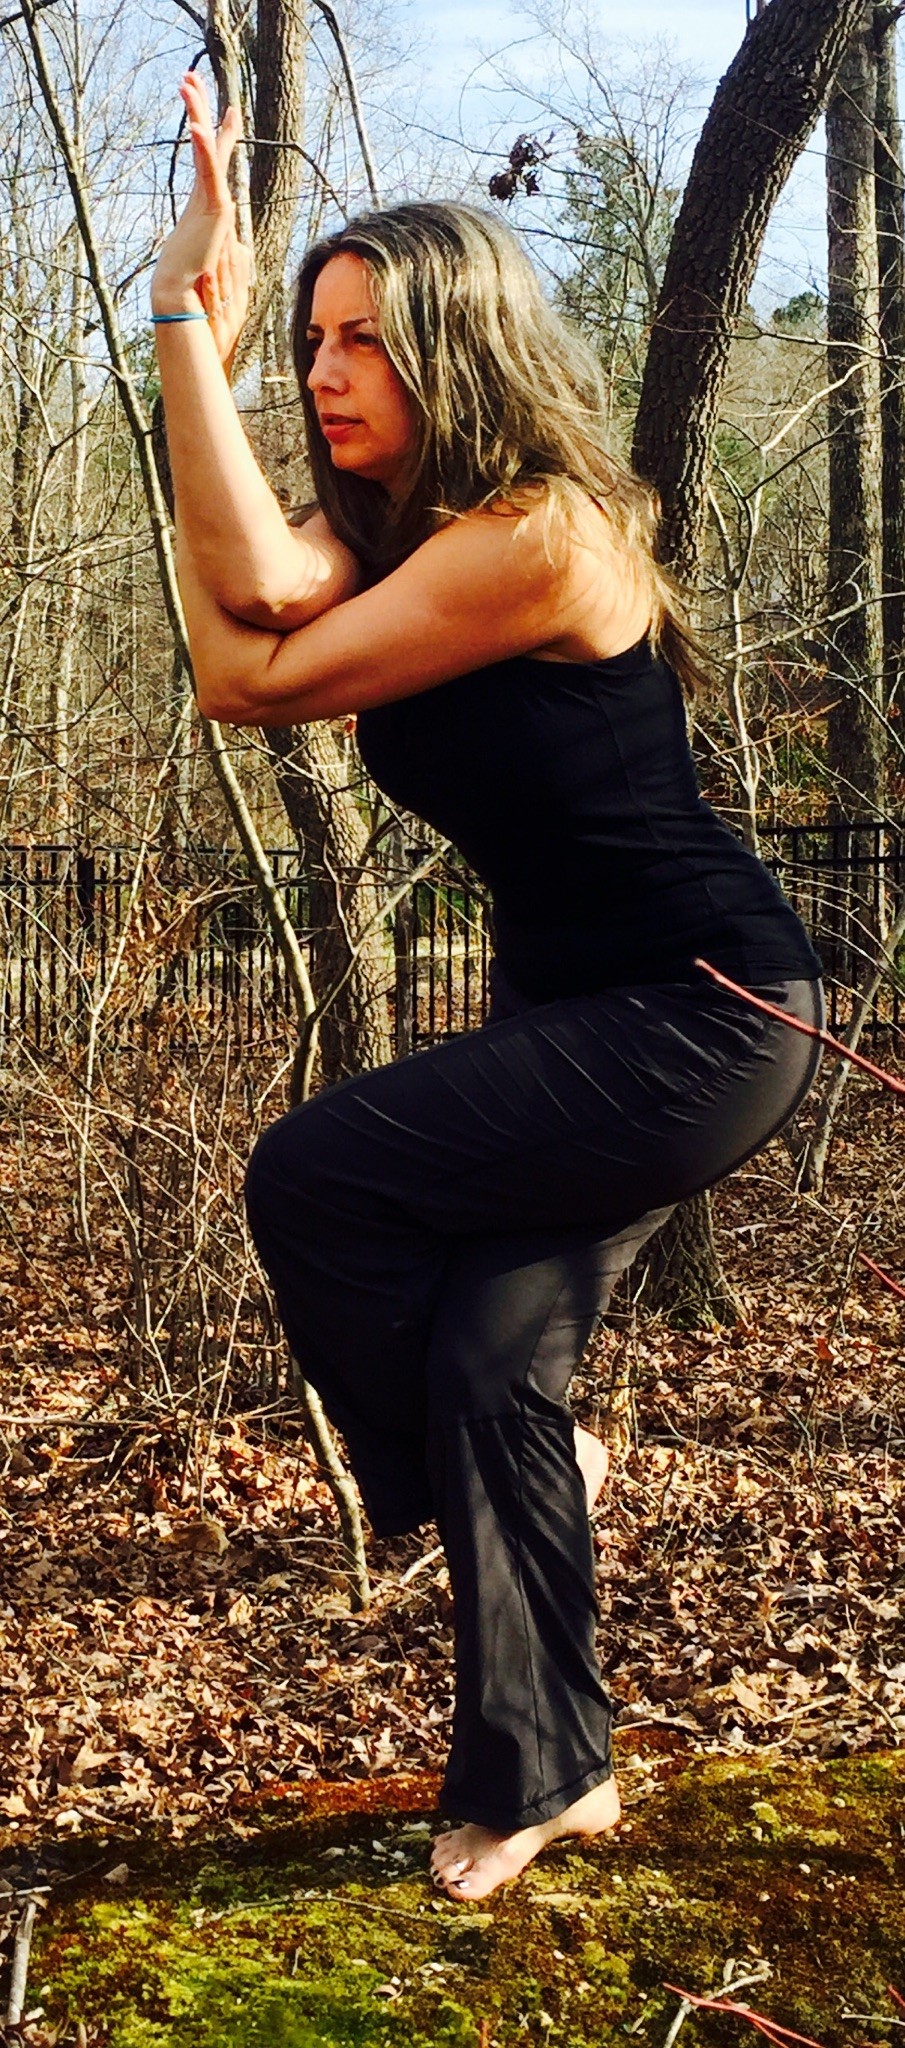 Eagle pose mujer joven practicando yoga fitness concepto de entrenamiento |  Vector Premium